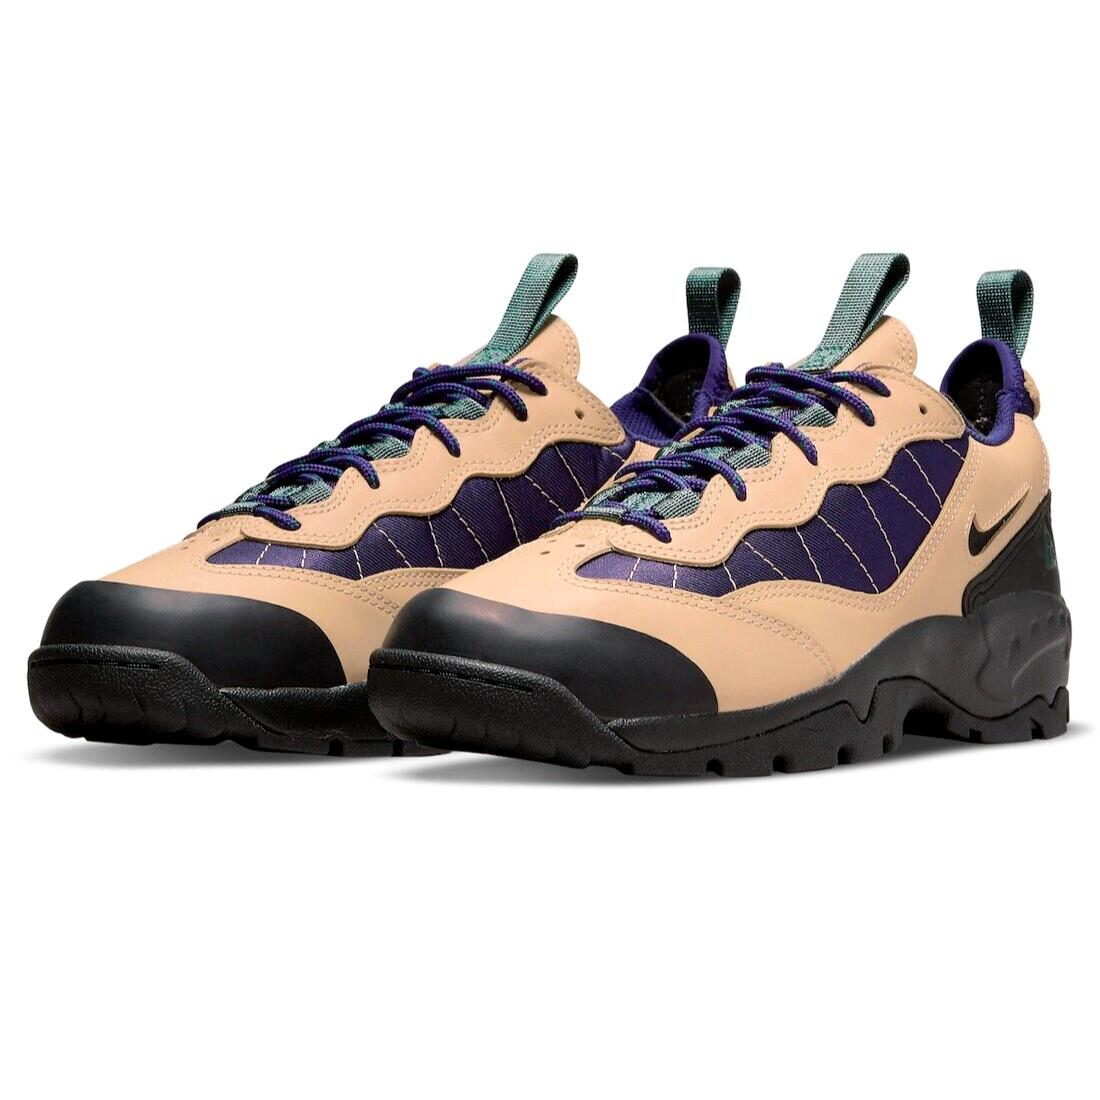 Nike Acg Air Mada Mens Size 6 Sneaker Shoes DM3004 200 Vachetta Tan